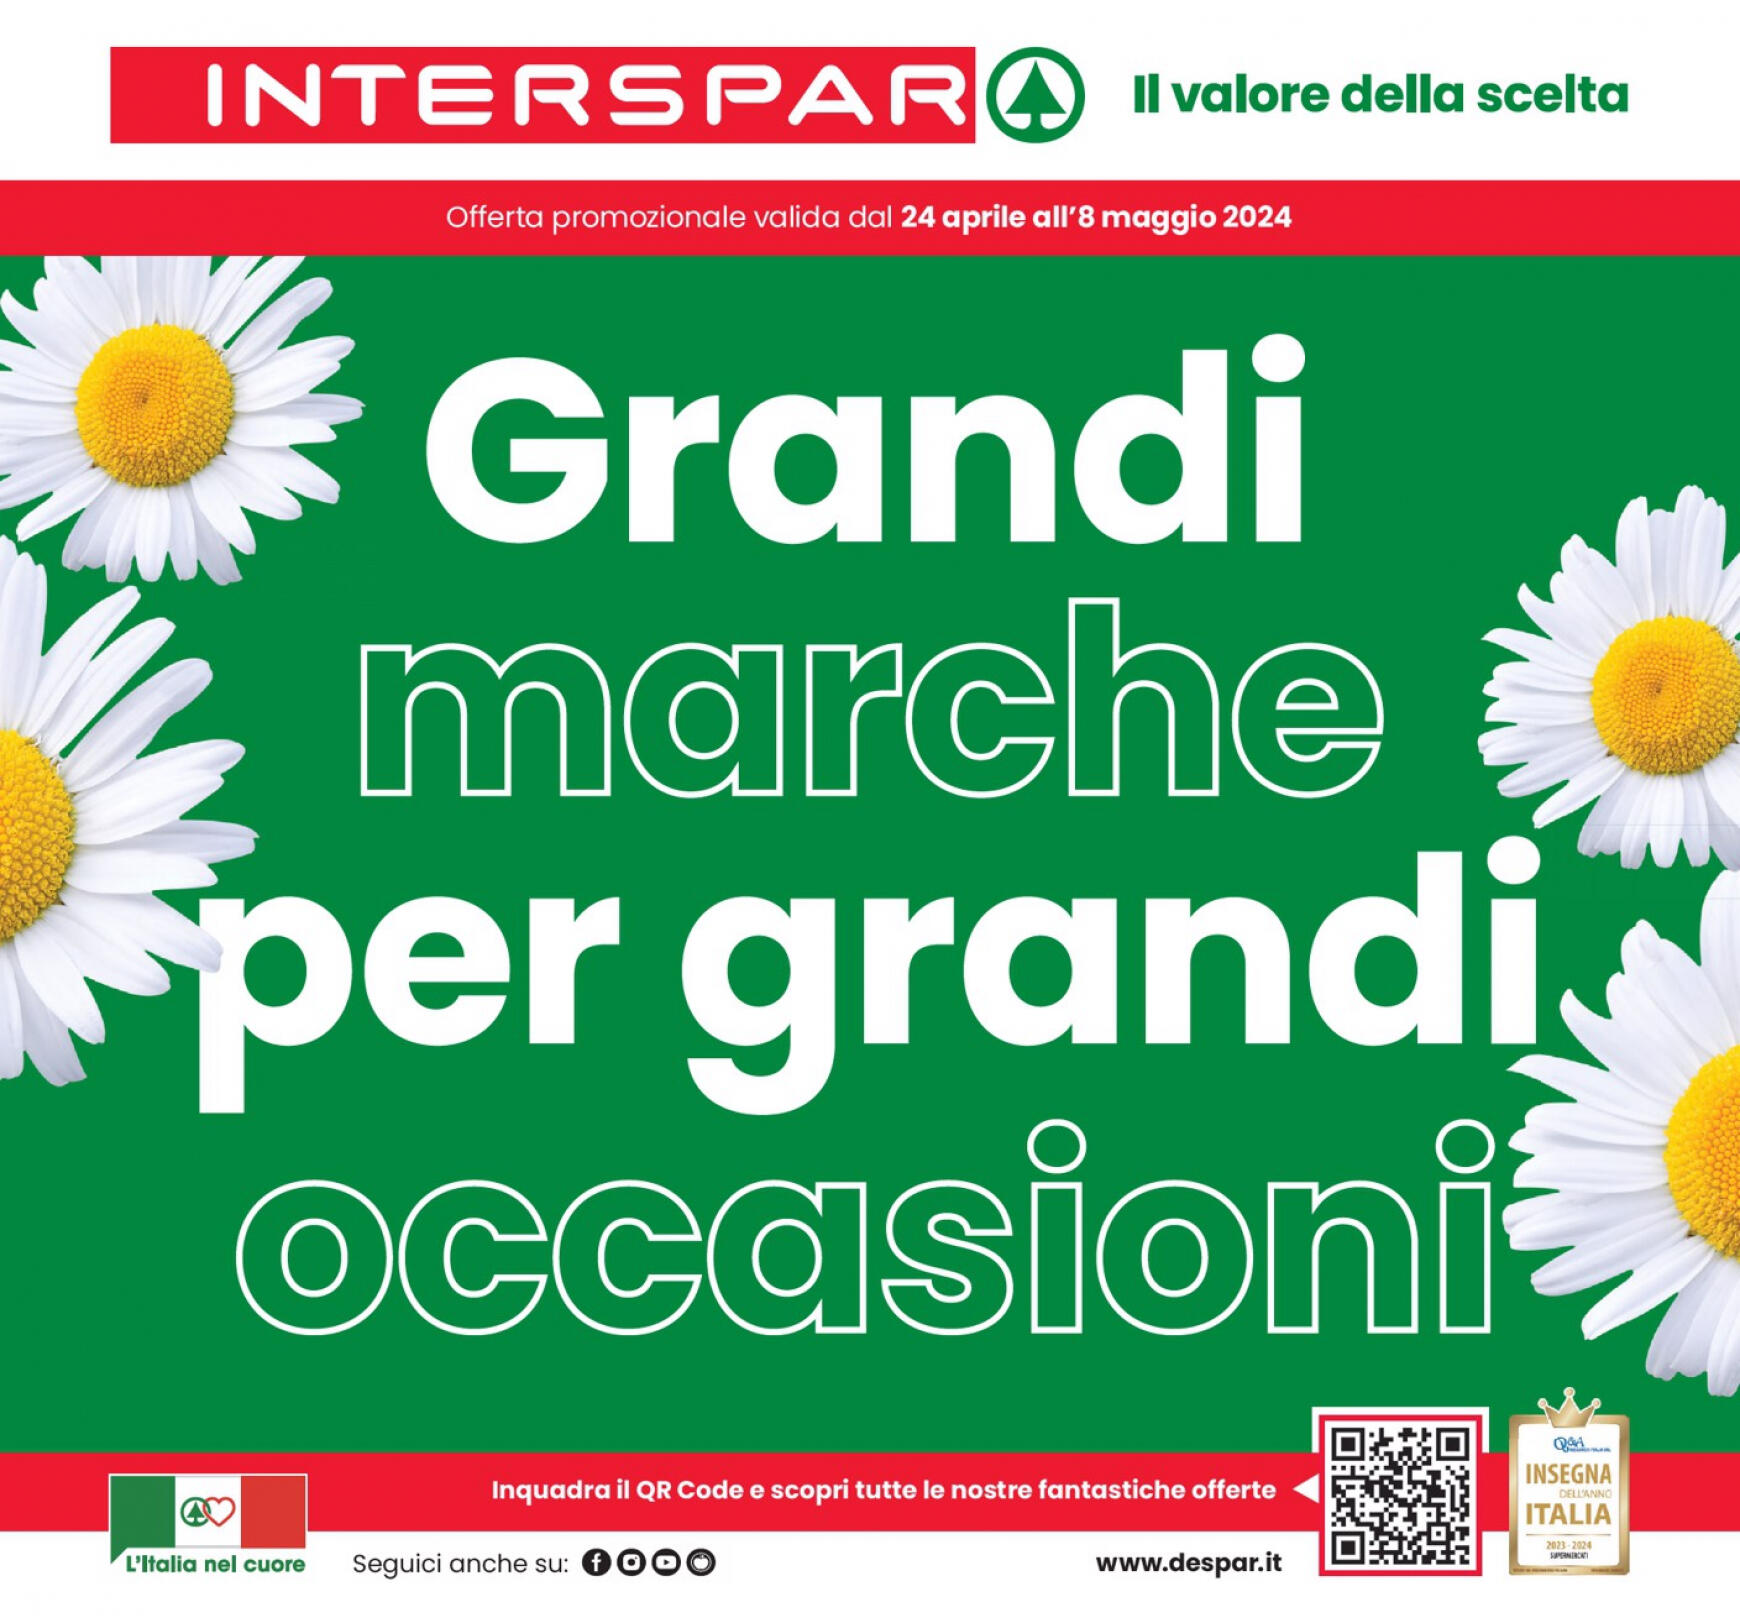 interspar - Nuovo volantino INTERSPAR - Grandi marche per grandi occasioni 24.04. - 08.05.